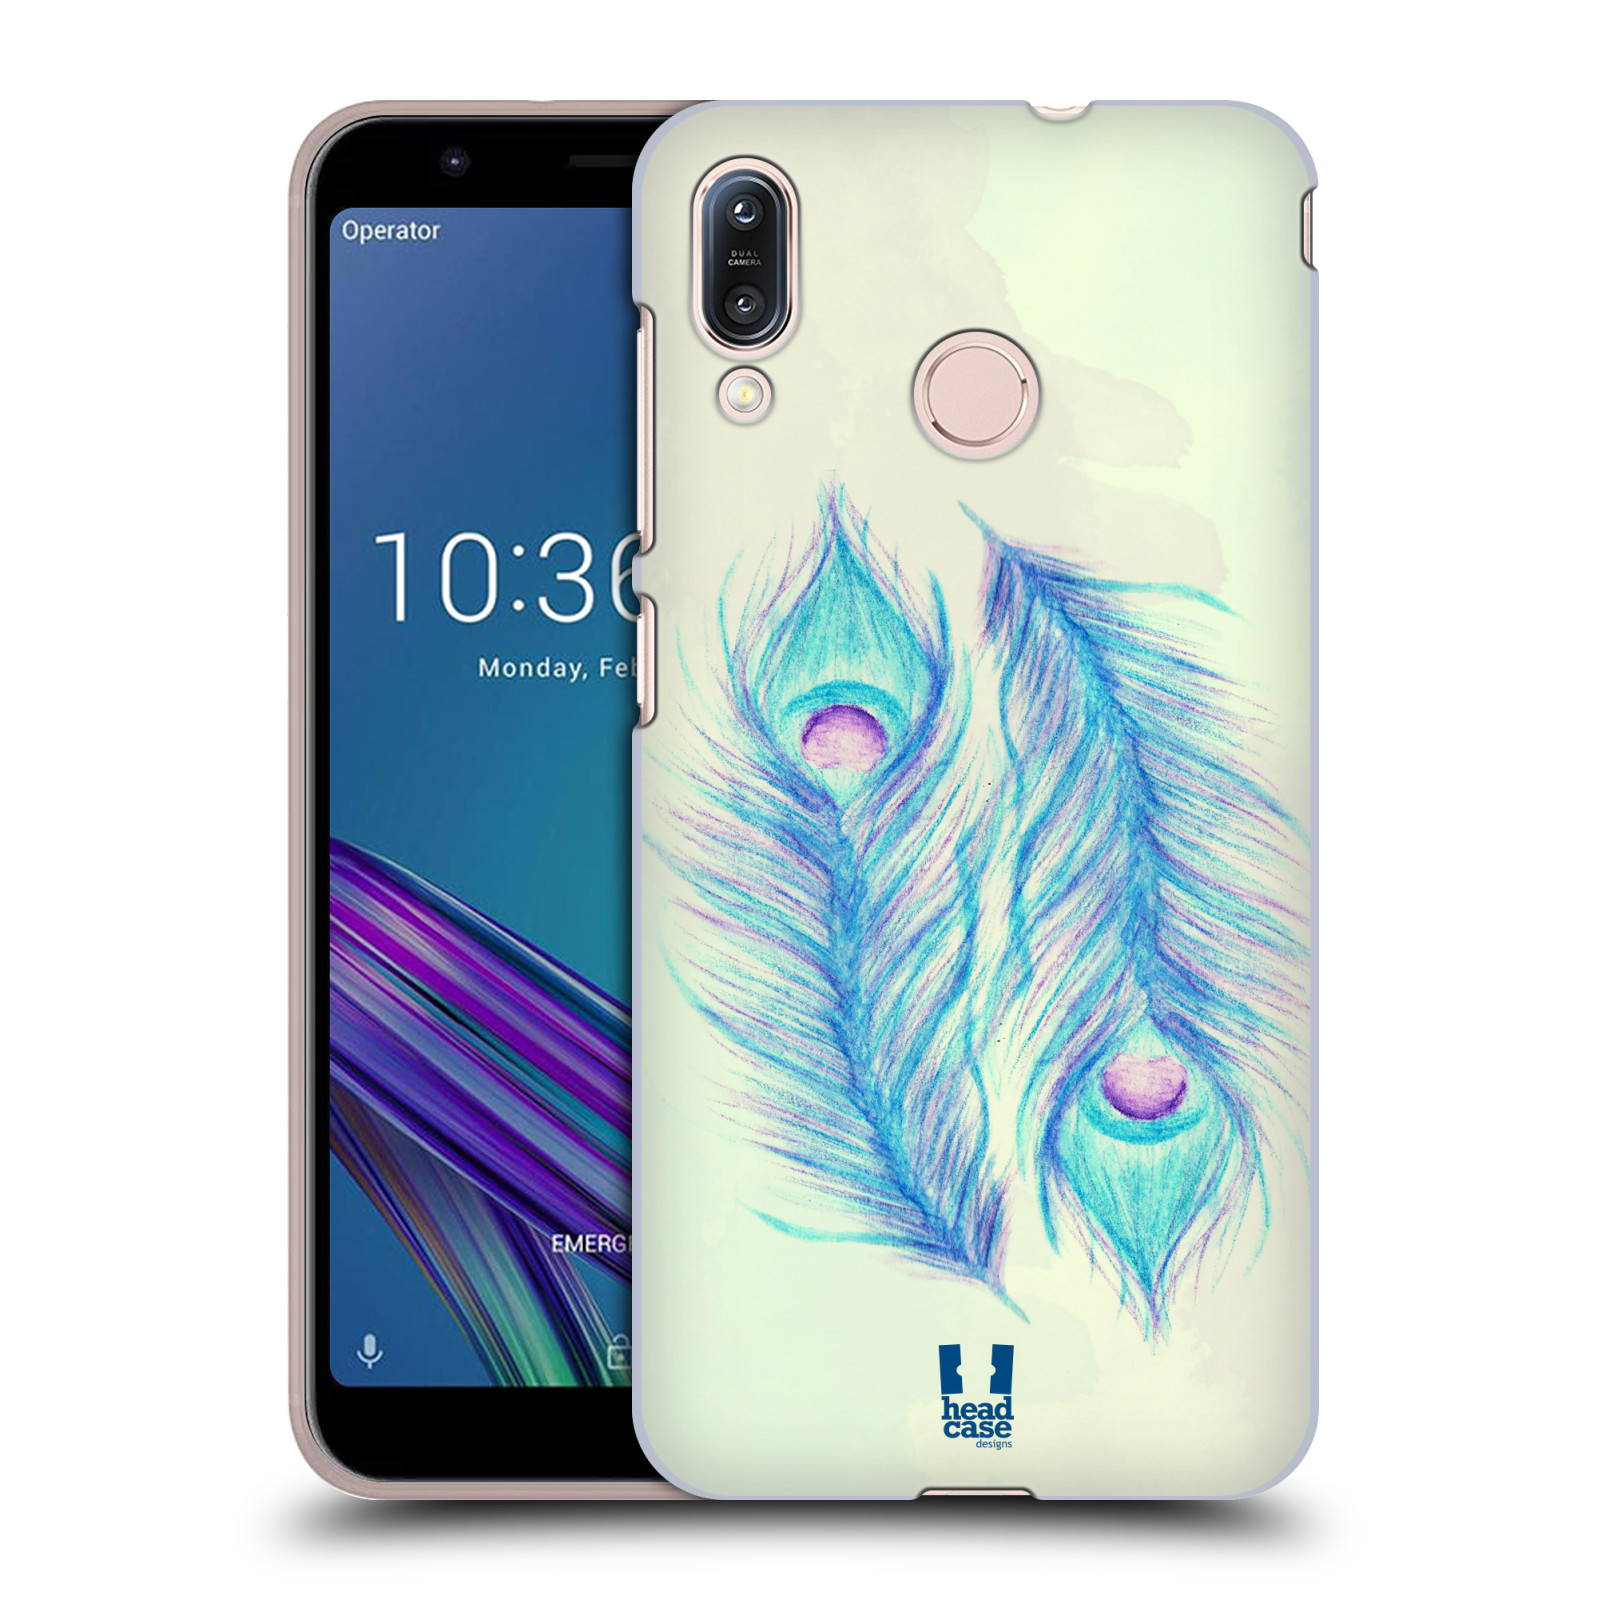 Pouzdro na mobil Asus Zenfone Max M1 (ZB555KL) - HEAD CASE - vzor Paví pírka barevná MODRÁ PÁR